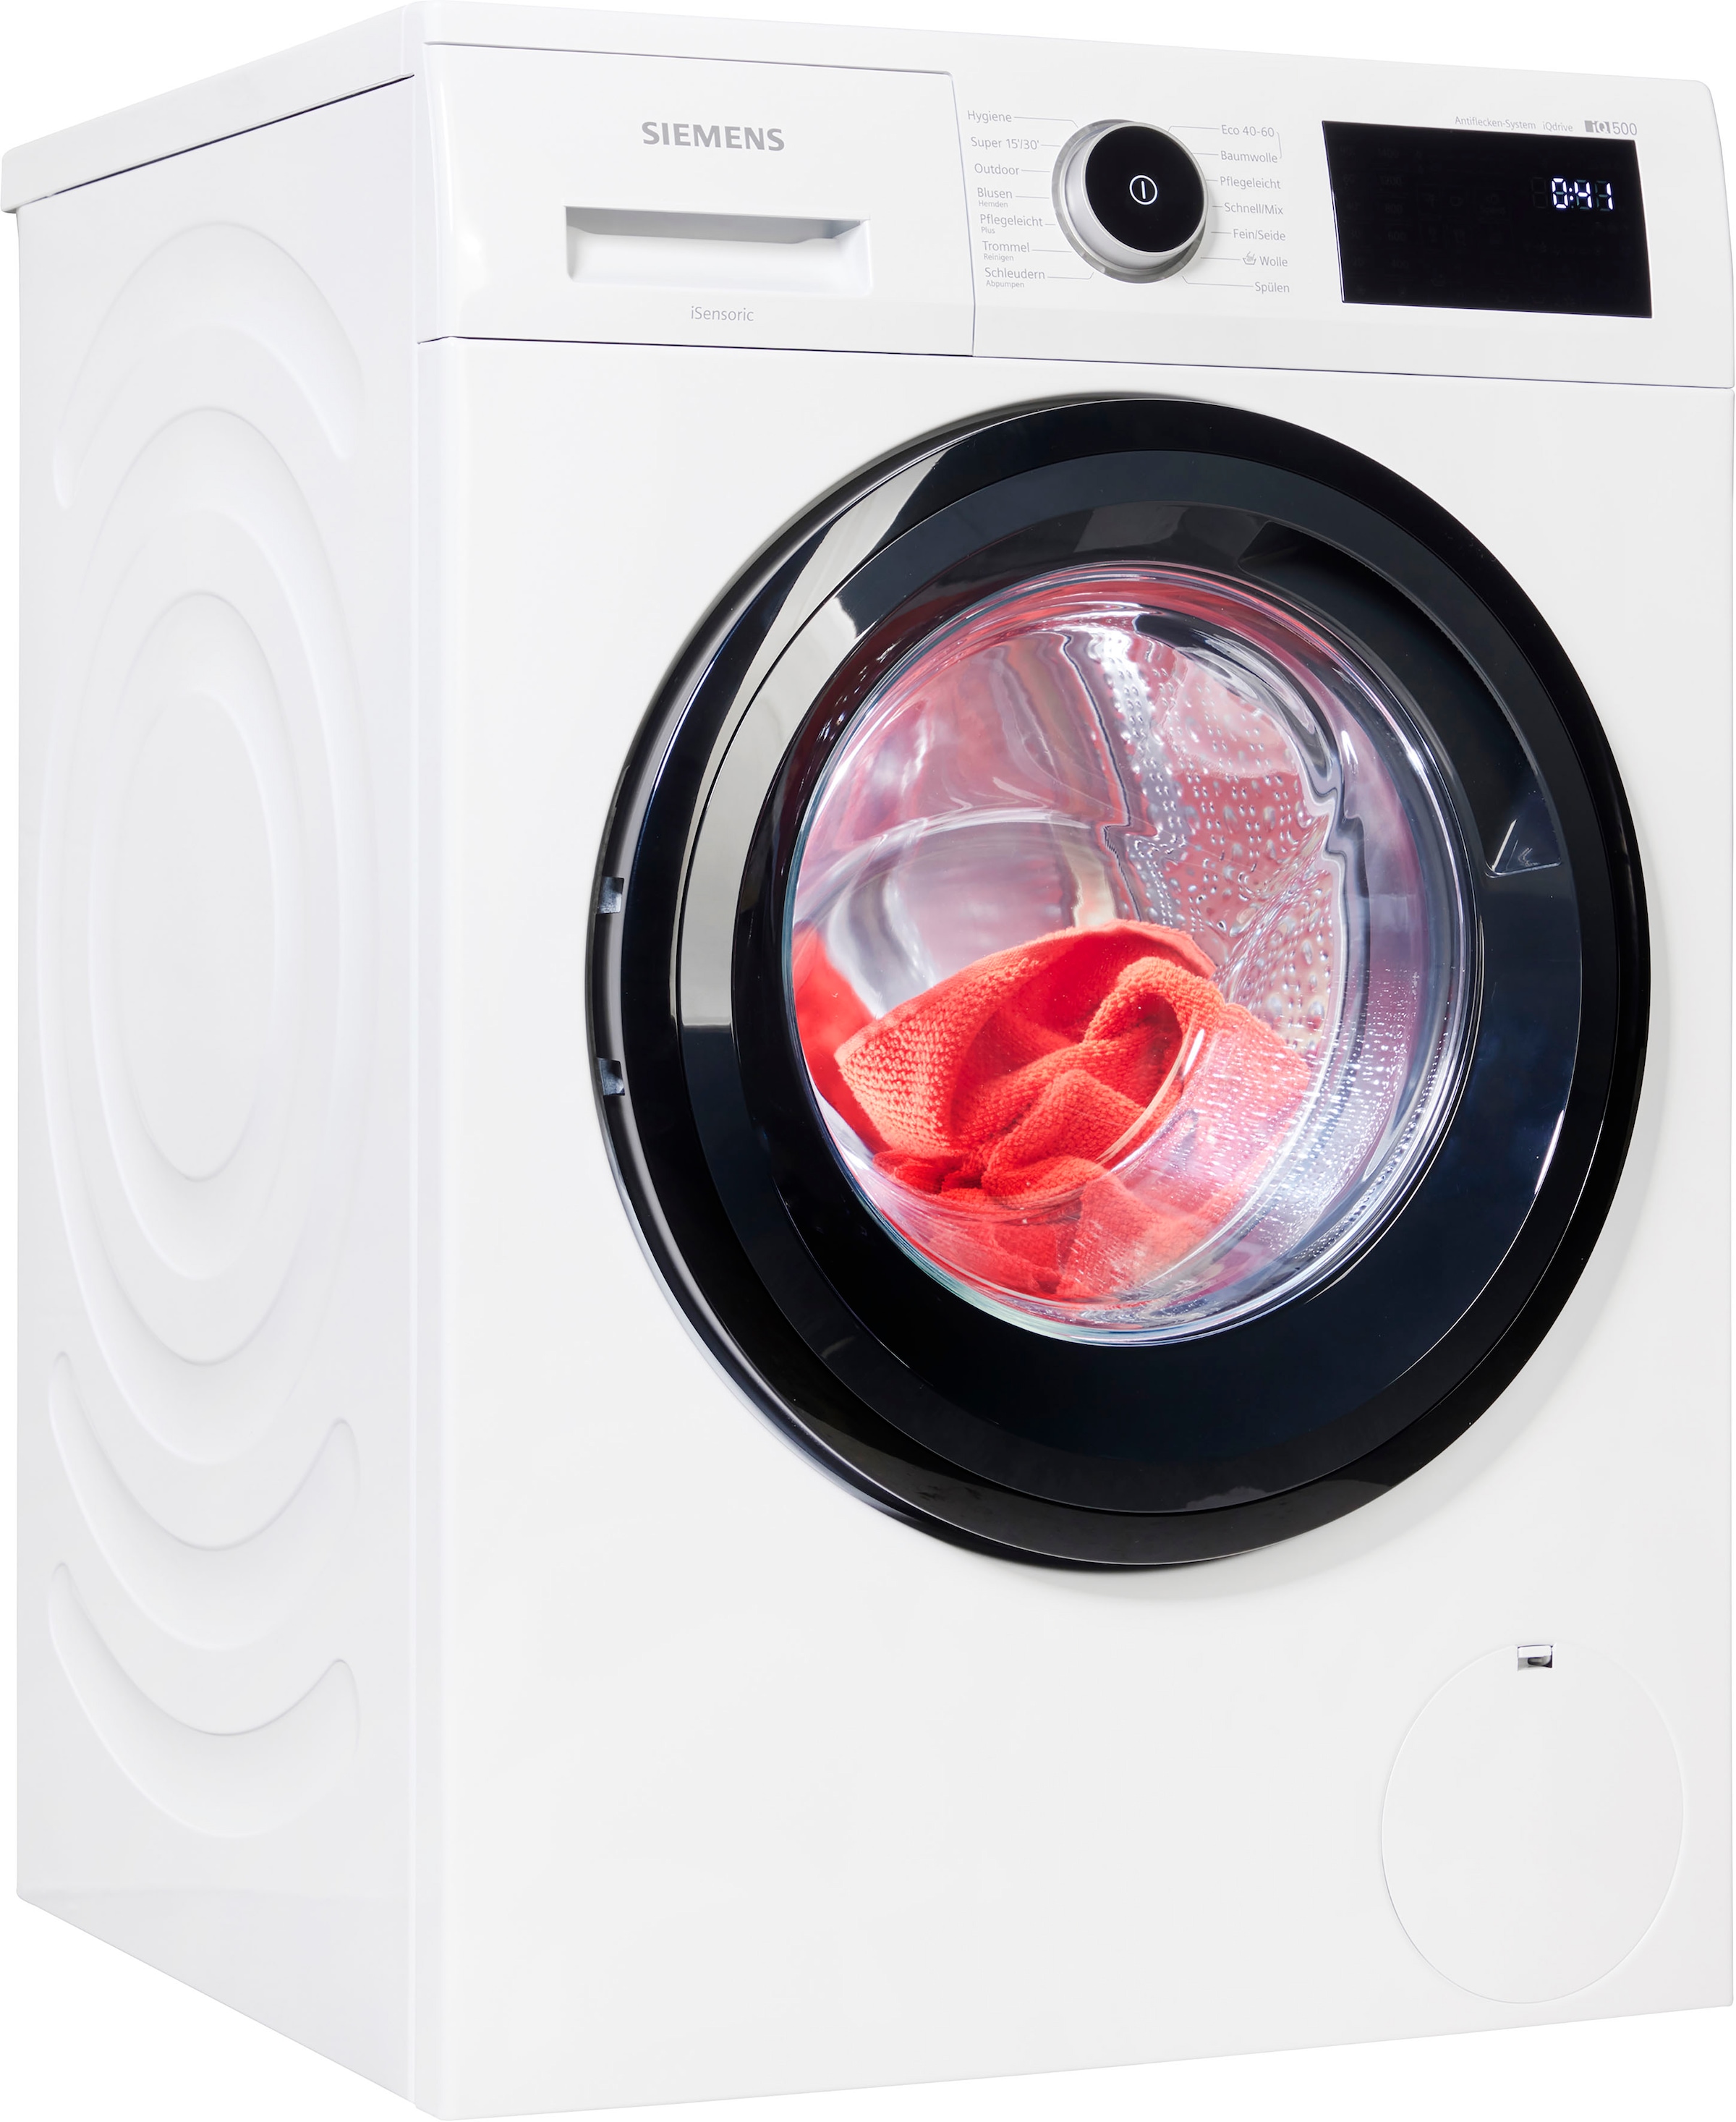 jetzt online Universal Waschmaschinen Siemens kaufen ⇒